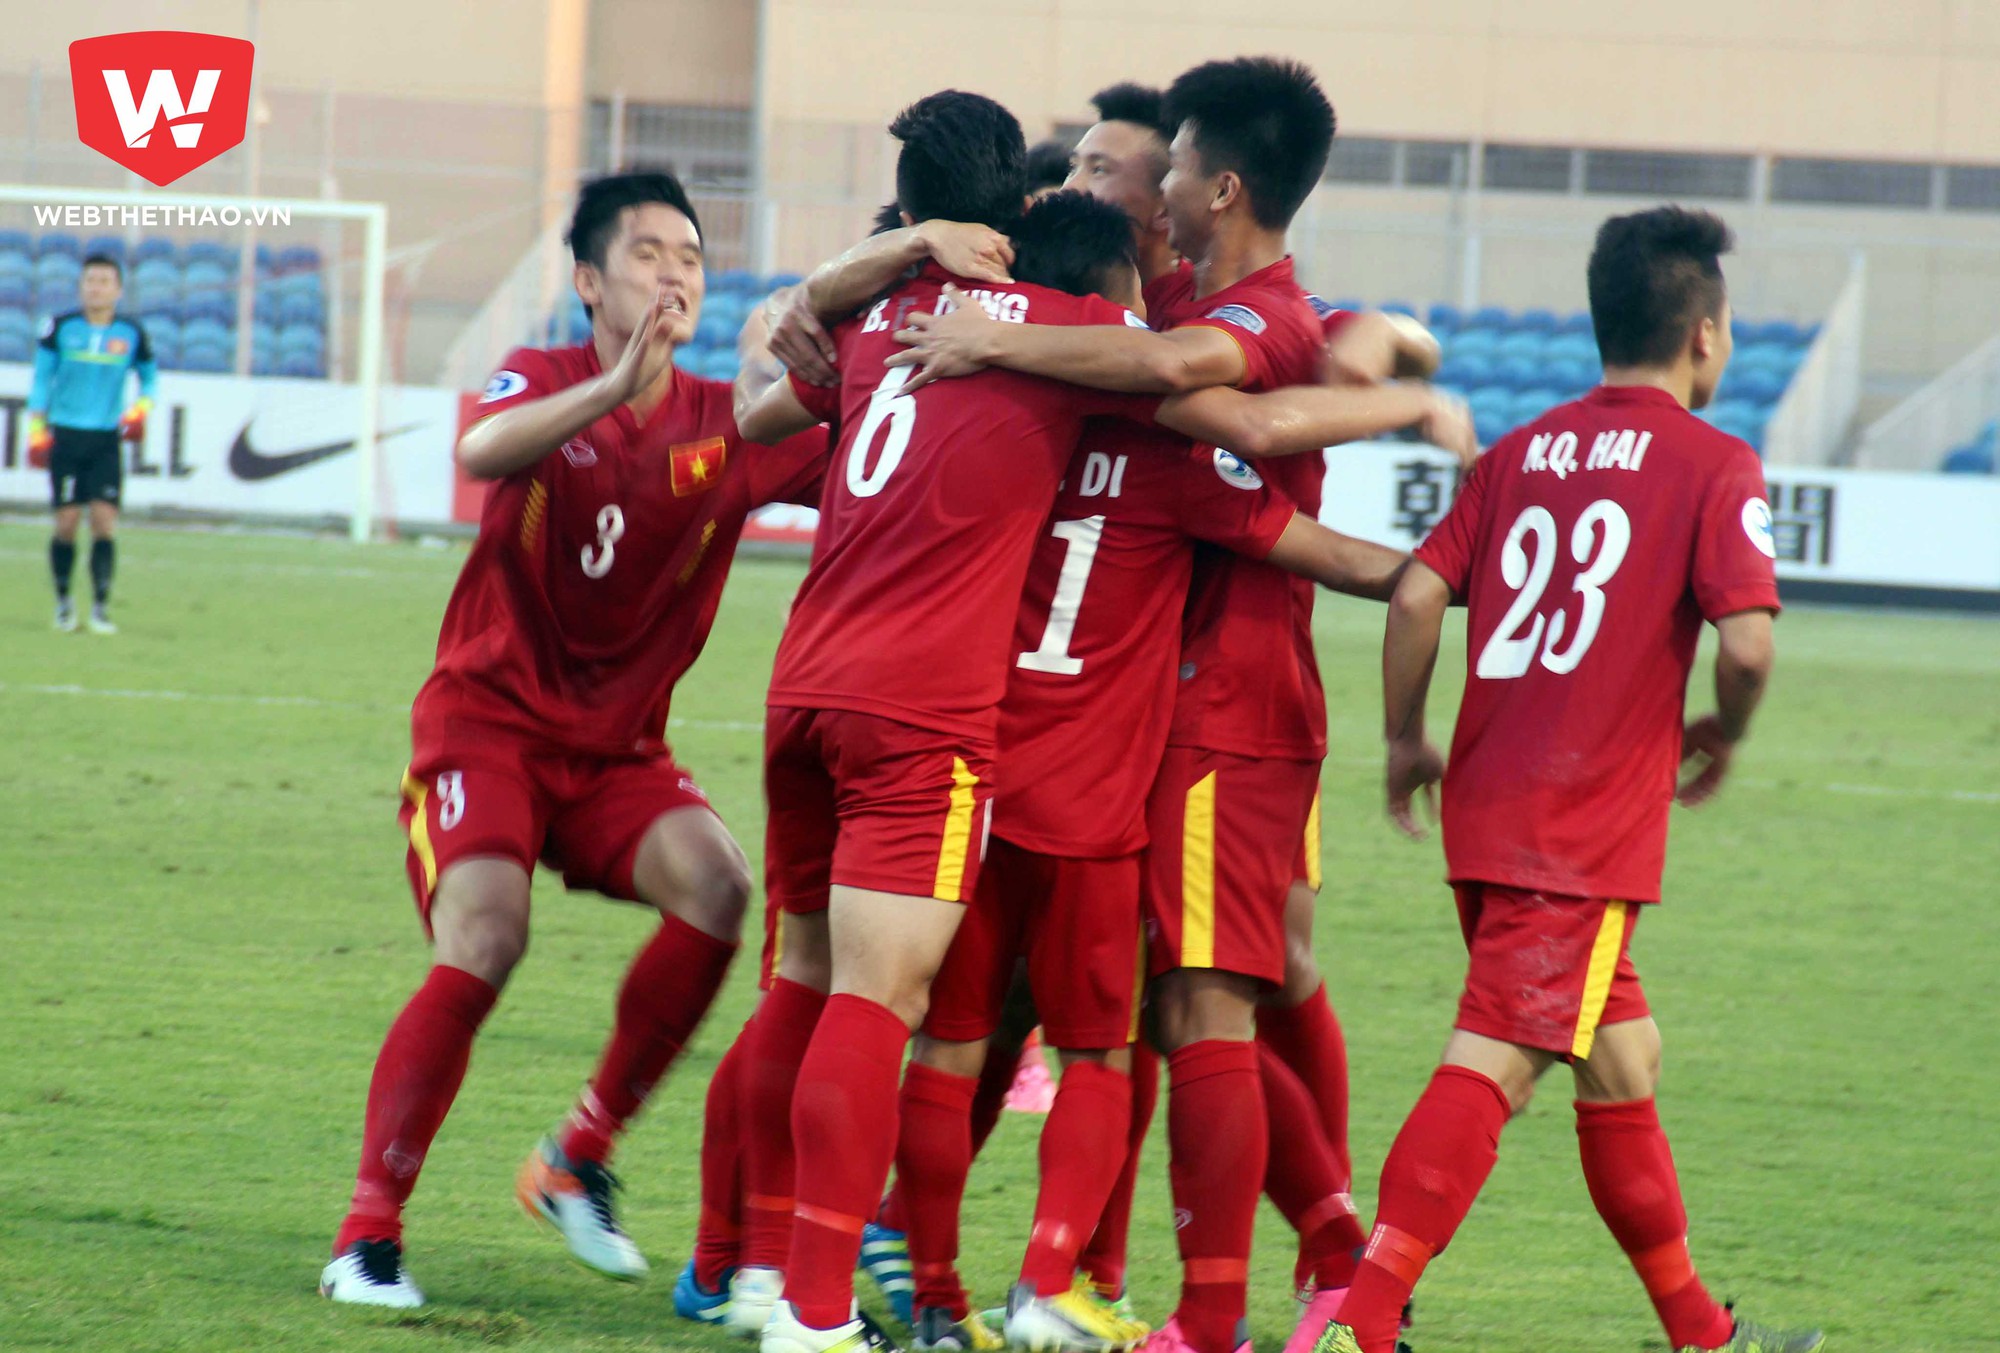 Việc U.19 Việt Nam lọt vào VCK World Cup U.20 là tiền đề để ĐTVN góp mặt tại sân chơi lớn nhất khu vực trong tương lai.